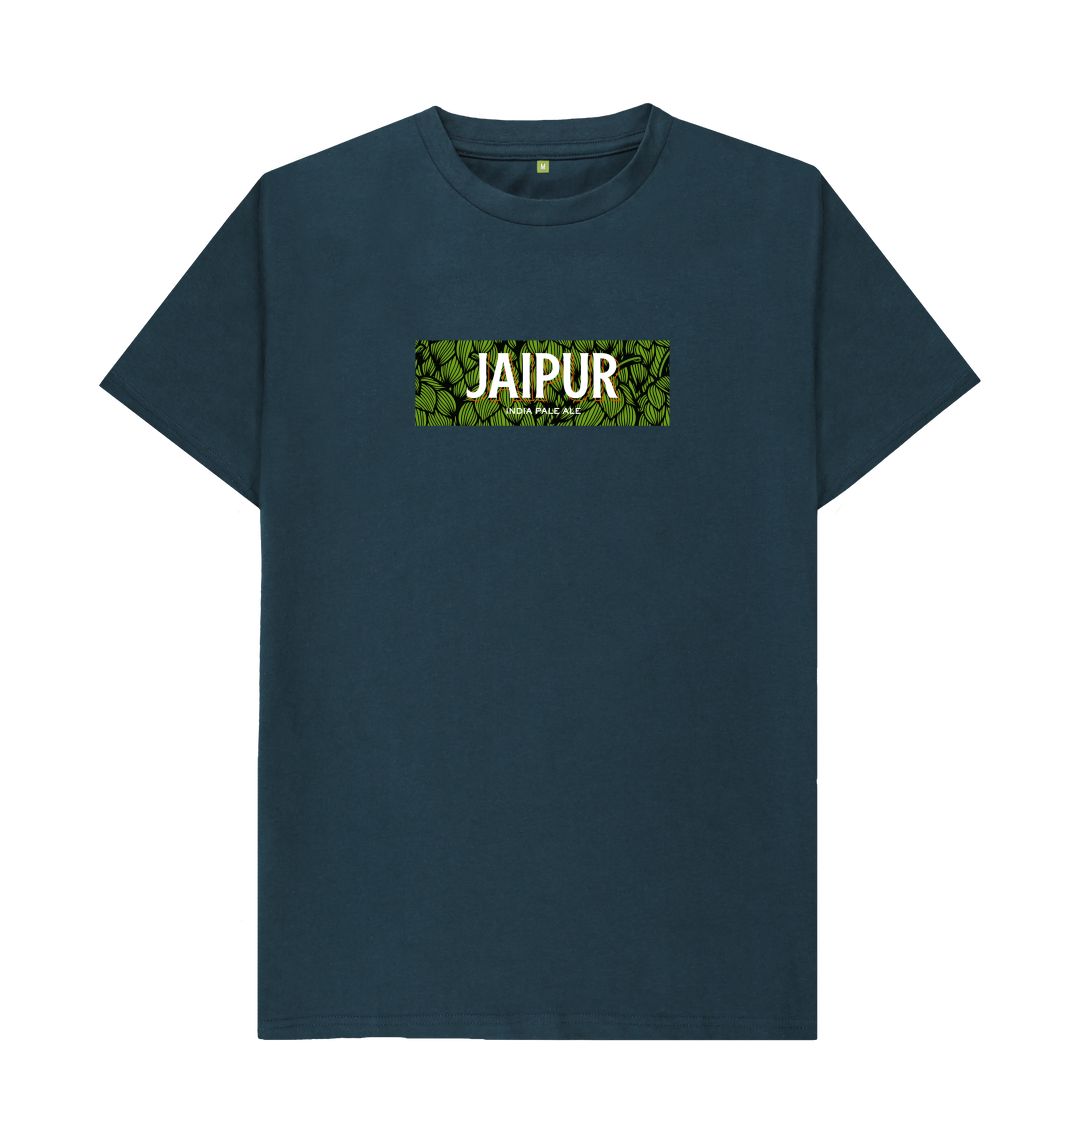 Jaipur hops boxed logo t shirt Printed T-shirt Thornbridge